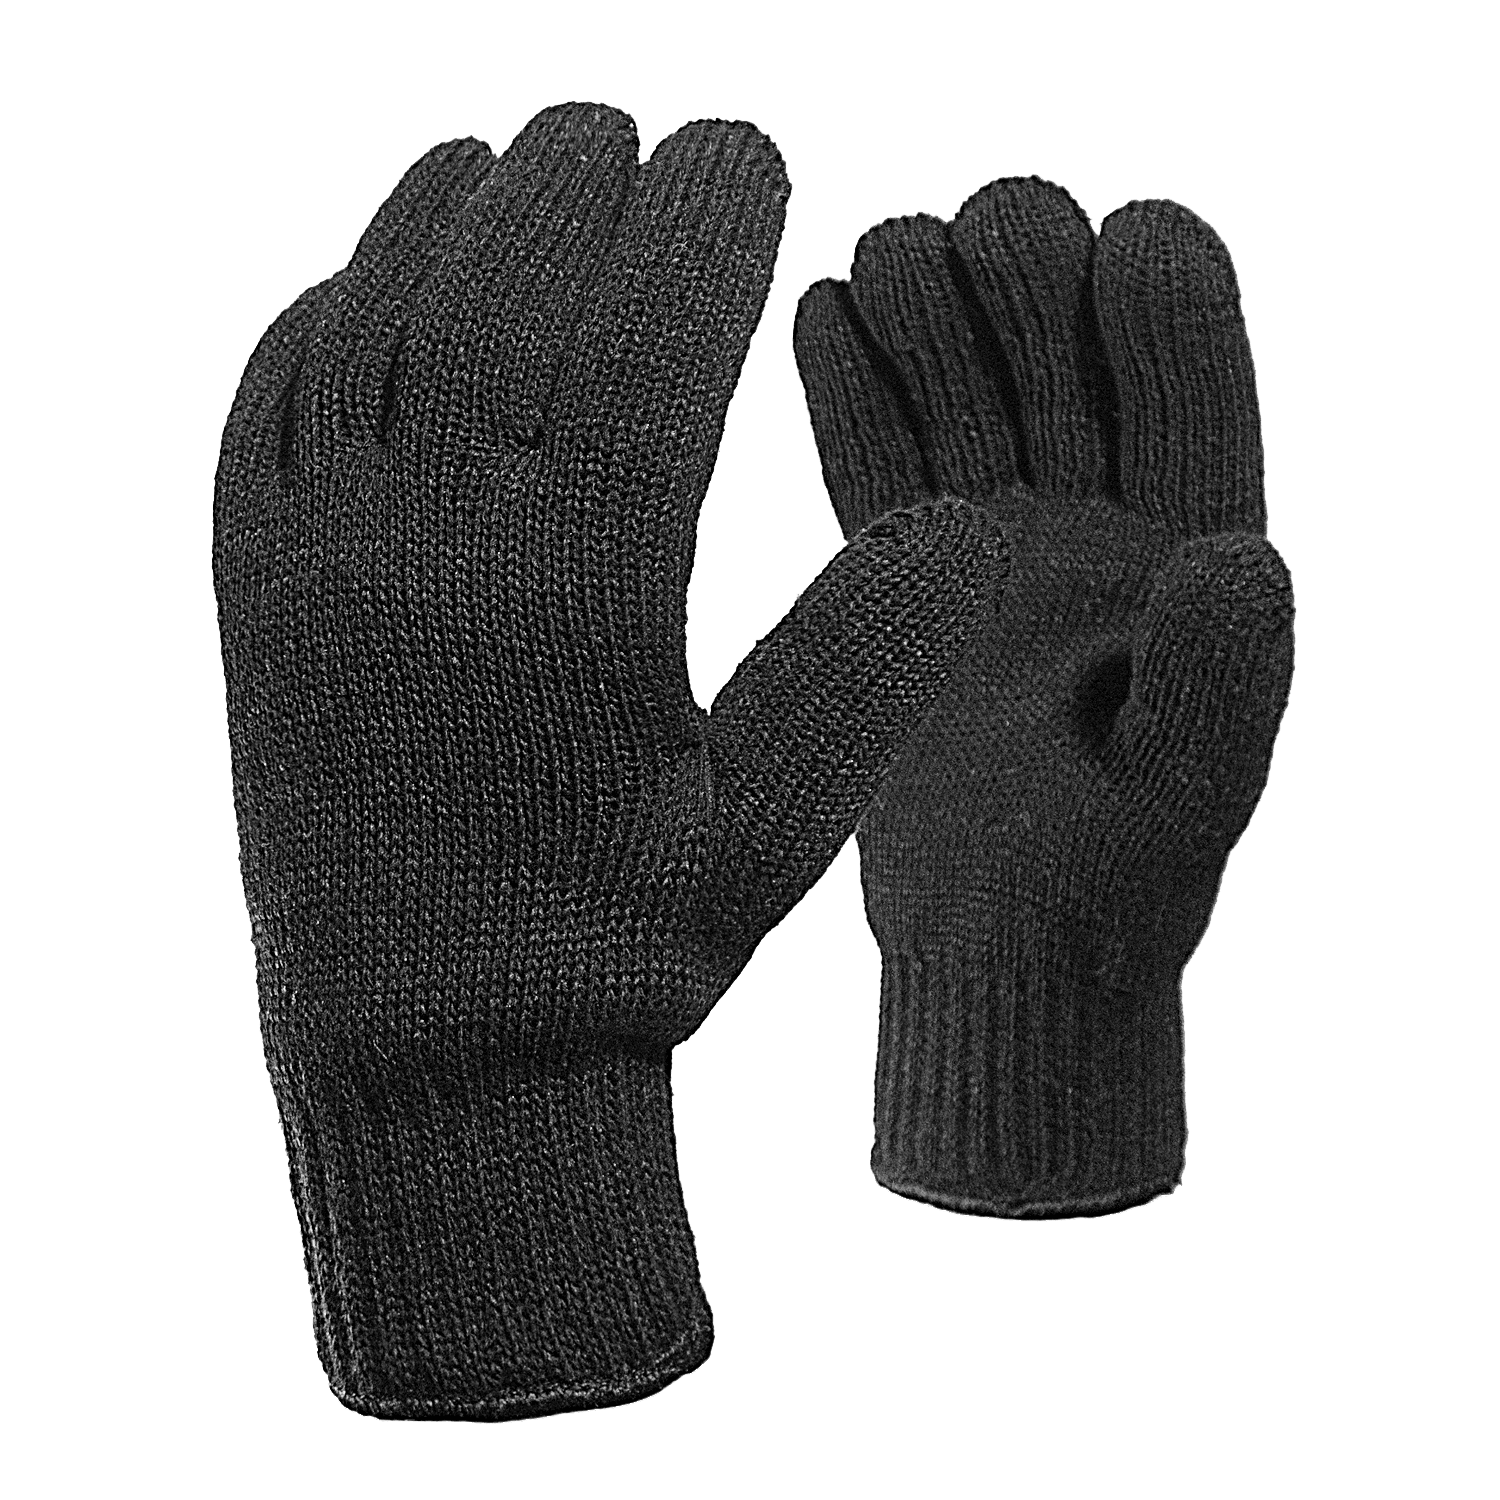 ✔️ Скидка -30% на полушерстяные перчатки без ПВХ (утепляющие вкладыши)